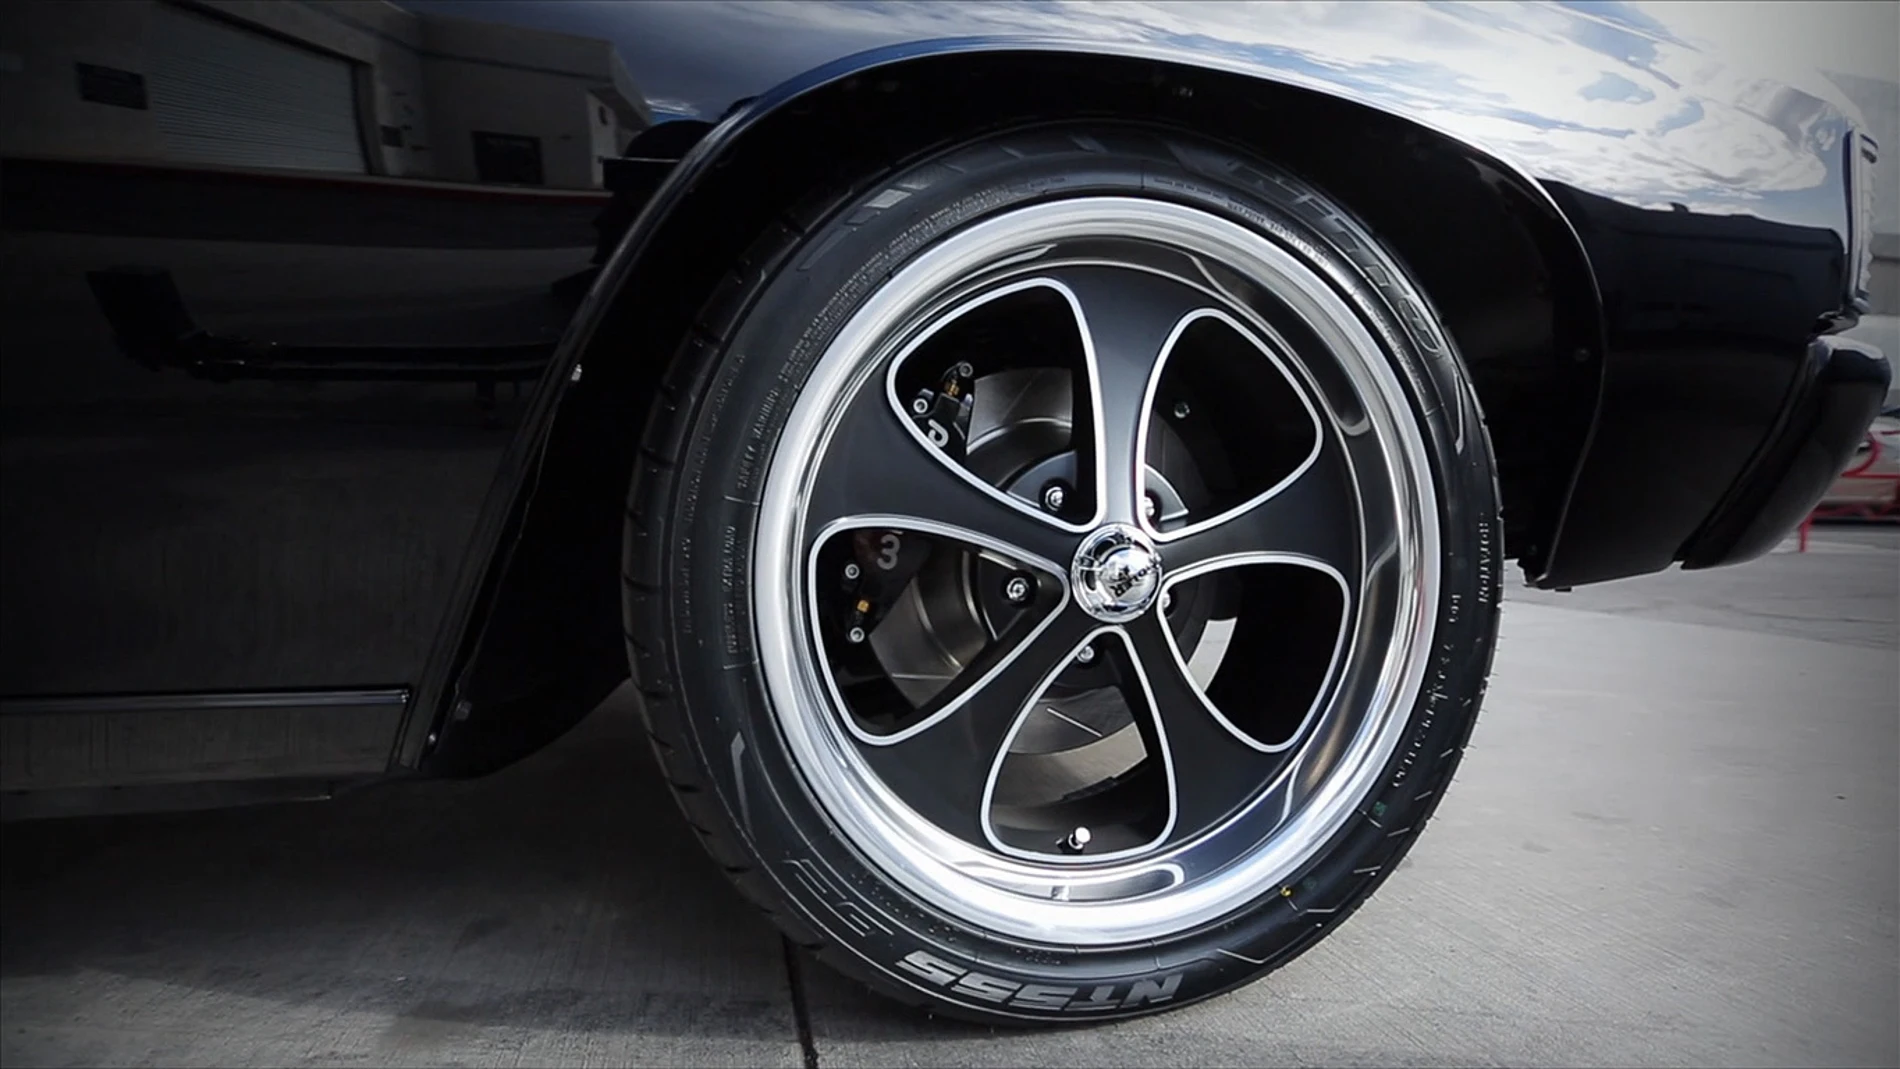 Los neumáticos de un Chevelle de los 70